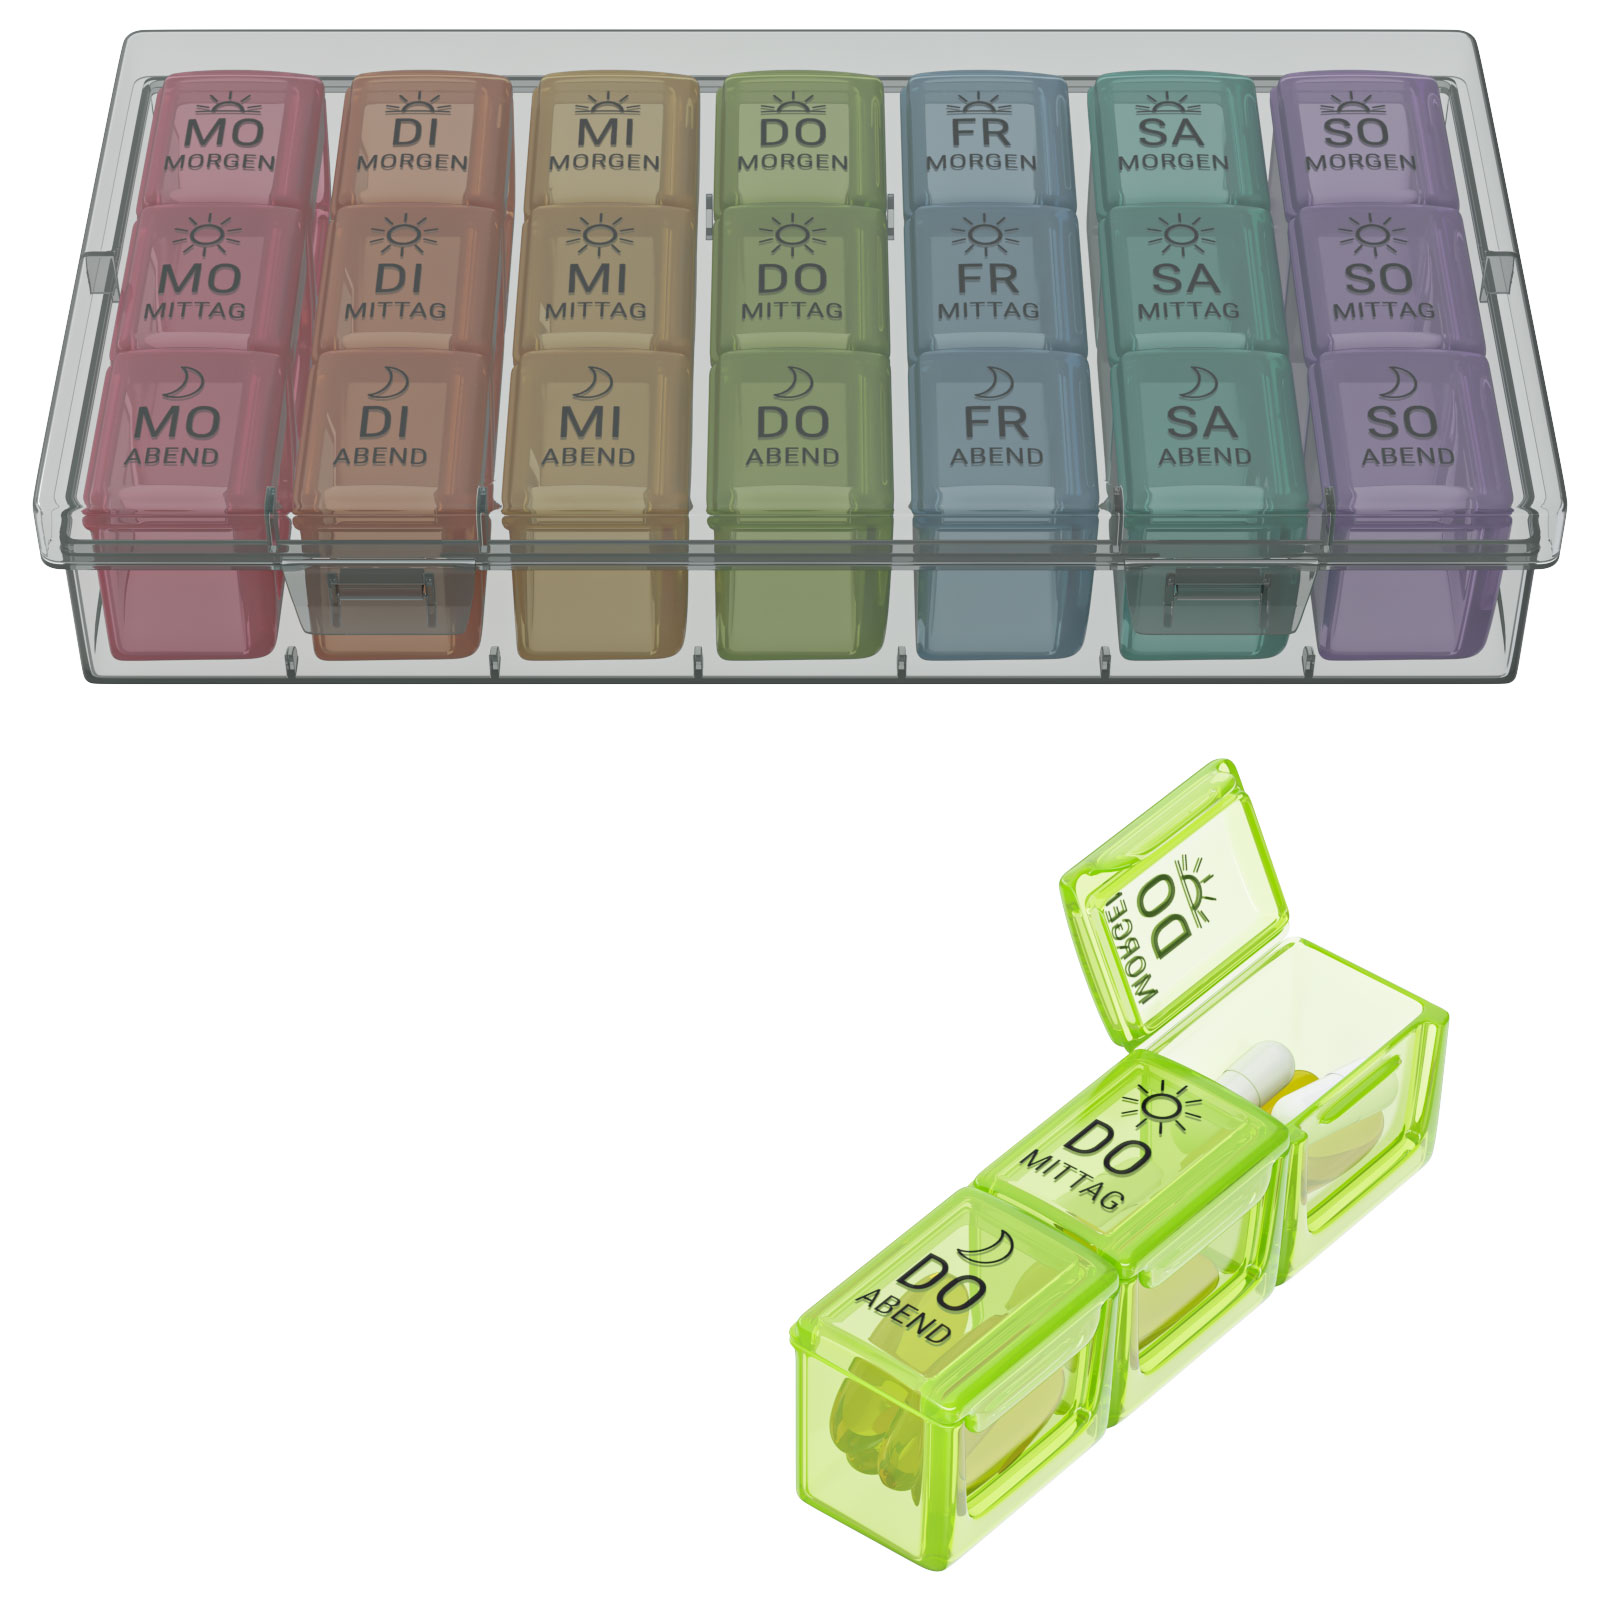 Medikamentenbox 3D Produkt Visualisierung